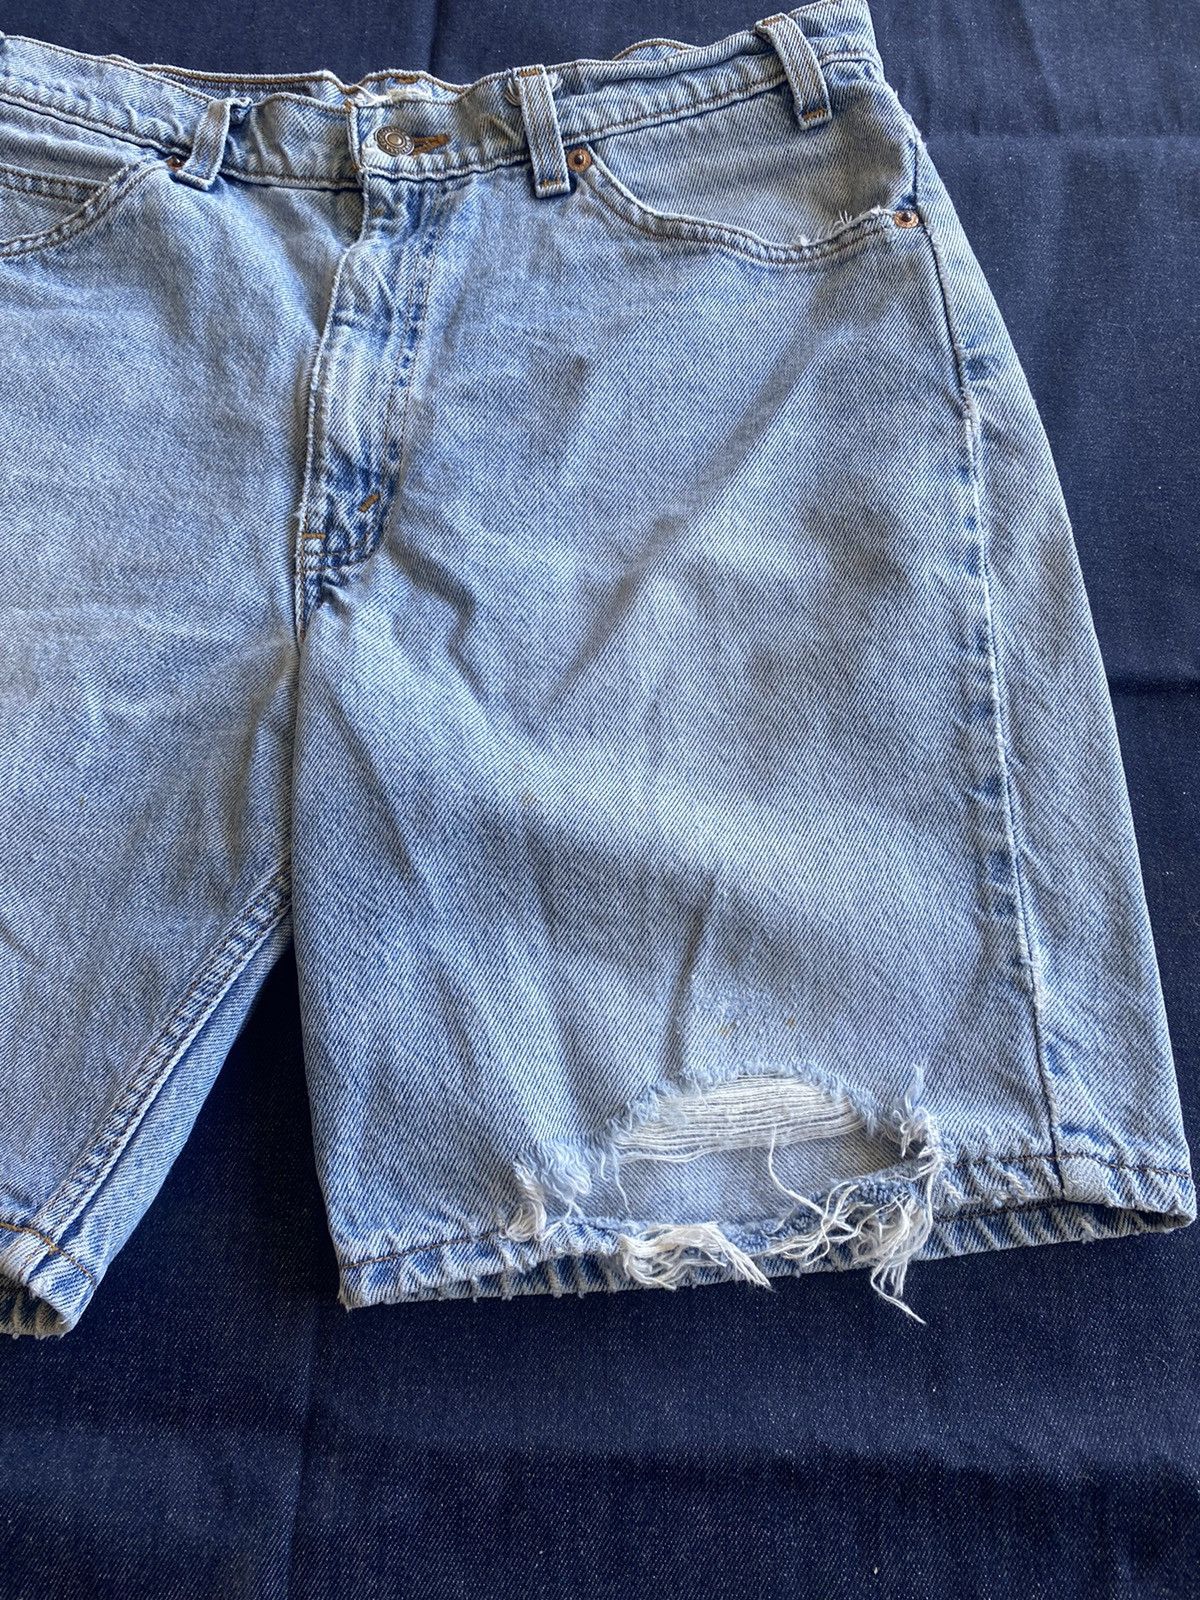 Vintage Vintage y2k Levi’s 550 orange tab jean shorts Levi’s jorts Size US 32 / EU 48 - 2 Preview